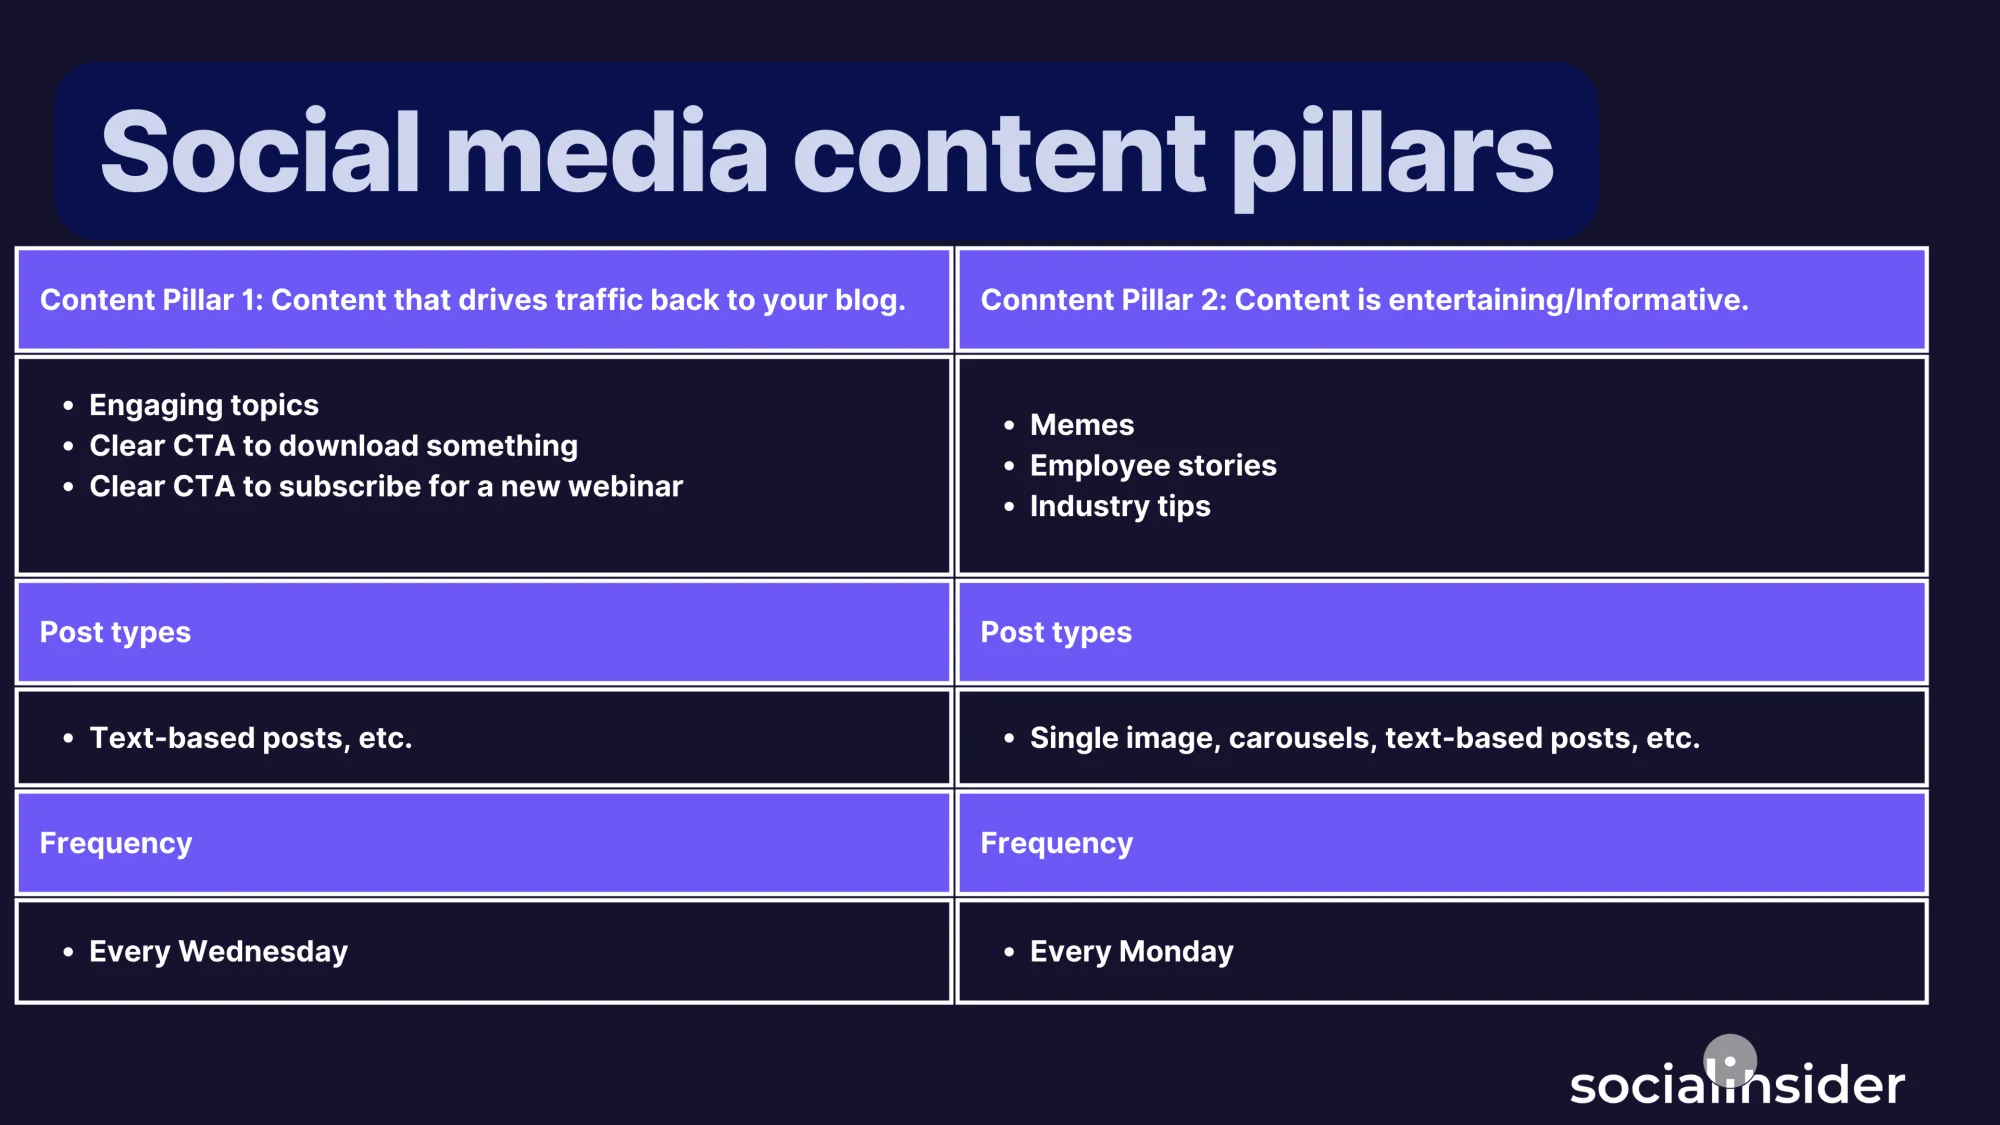 Social media content pillars